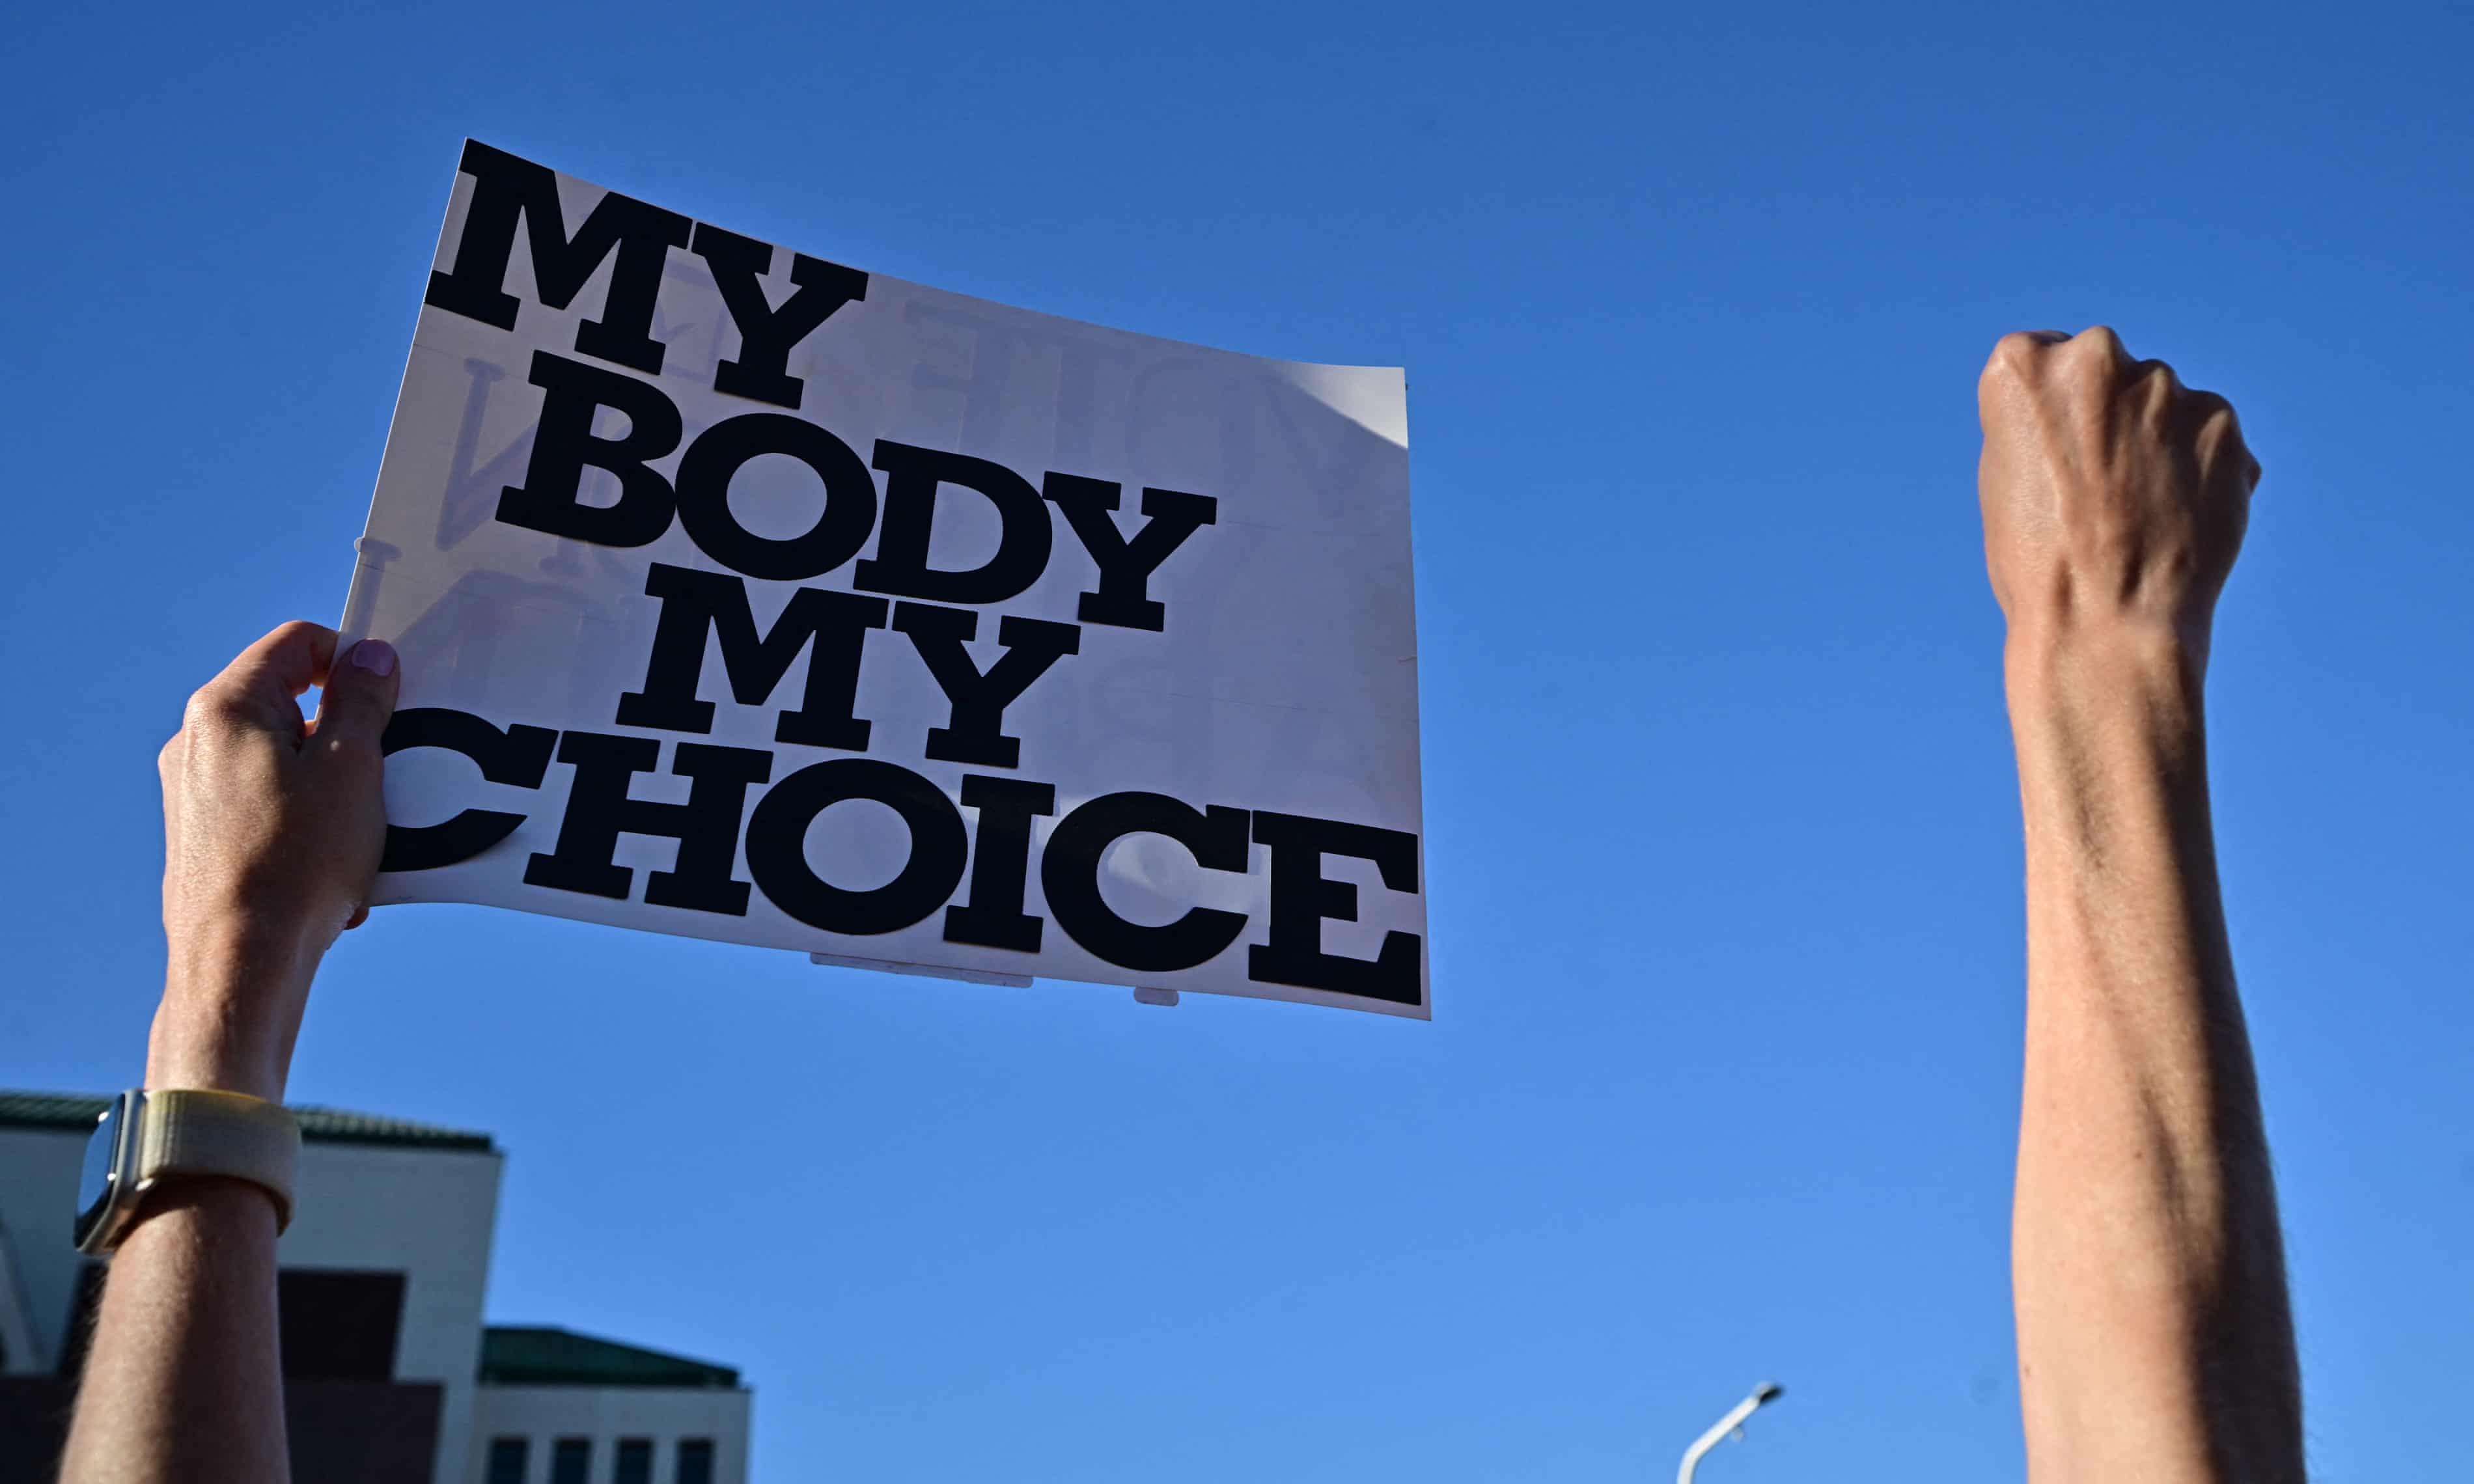 Arizona senate passes repeal of 1864 near-total abortion ban (theguardian.com)